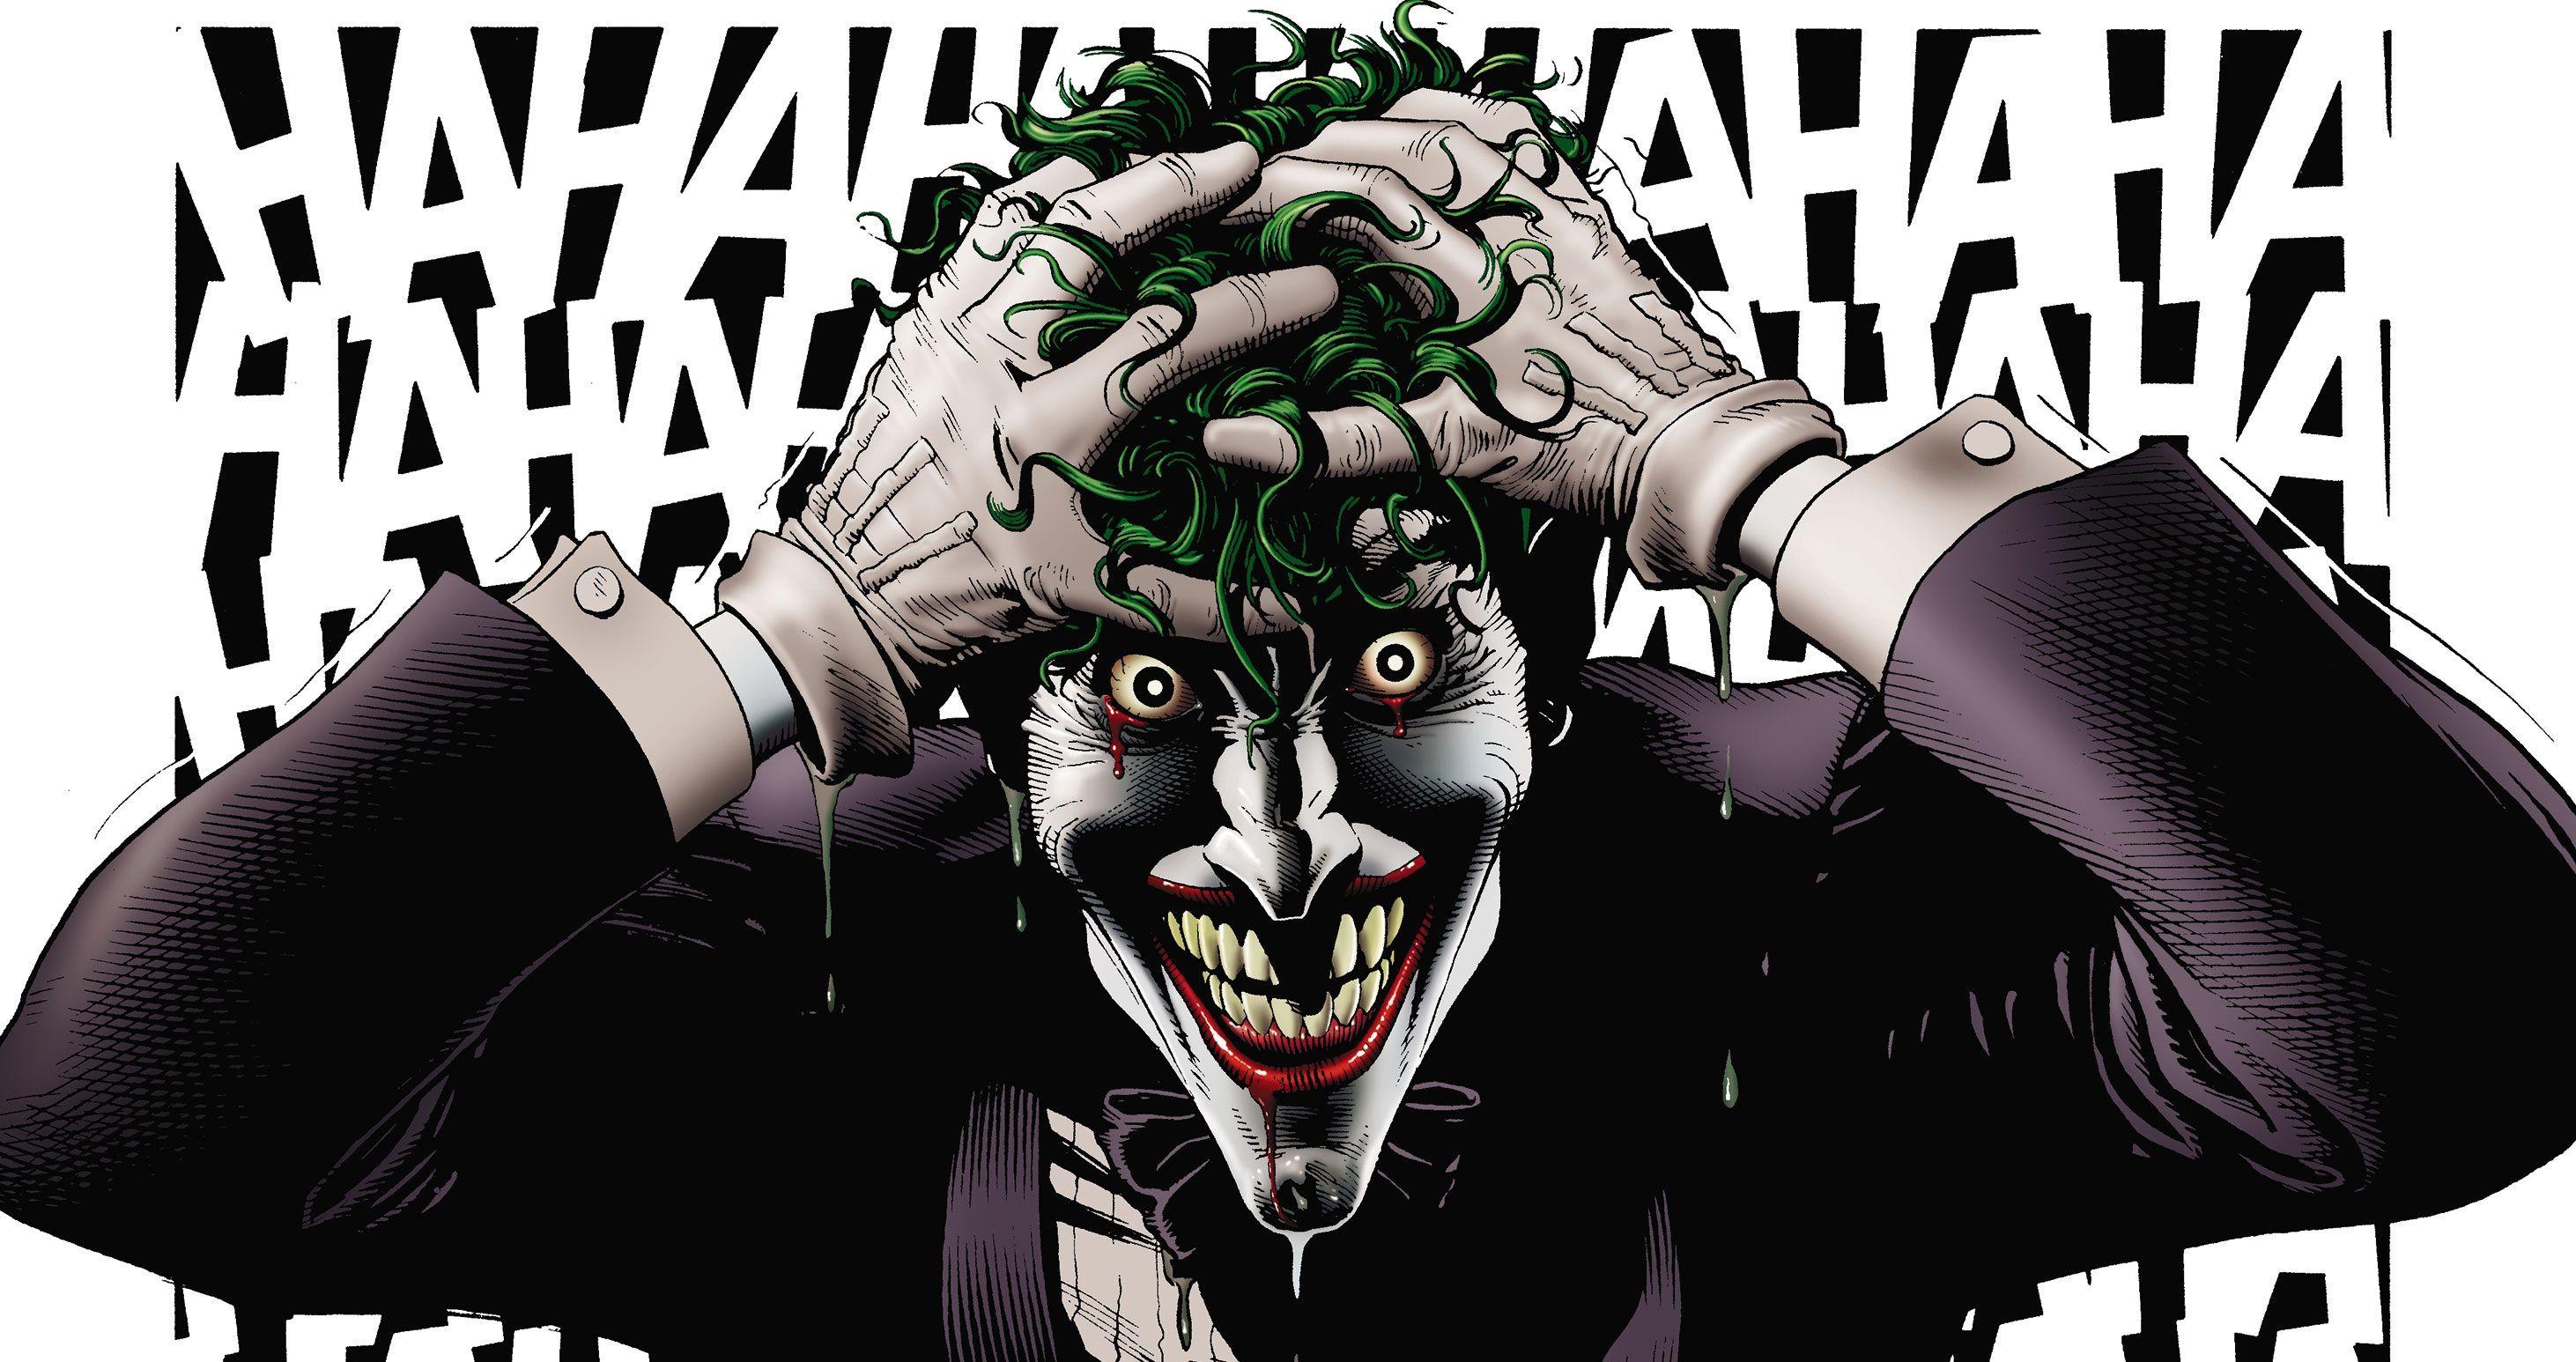 Joker Killing Joke 4k Ultra Hd Wallpapers Top Free Joker Killing Joke 